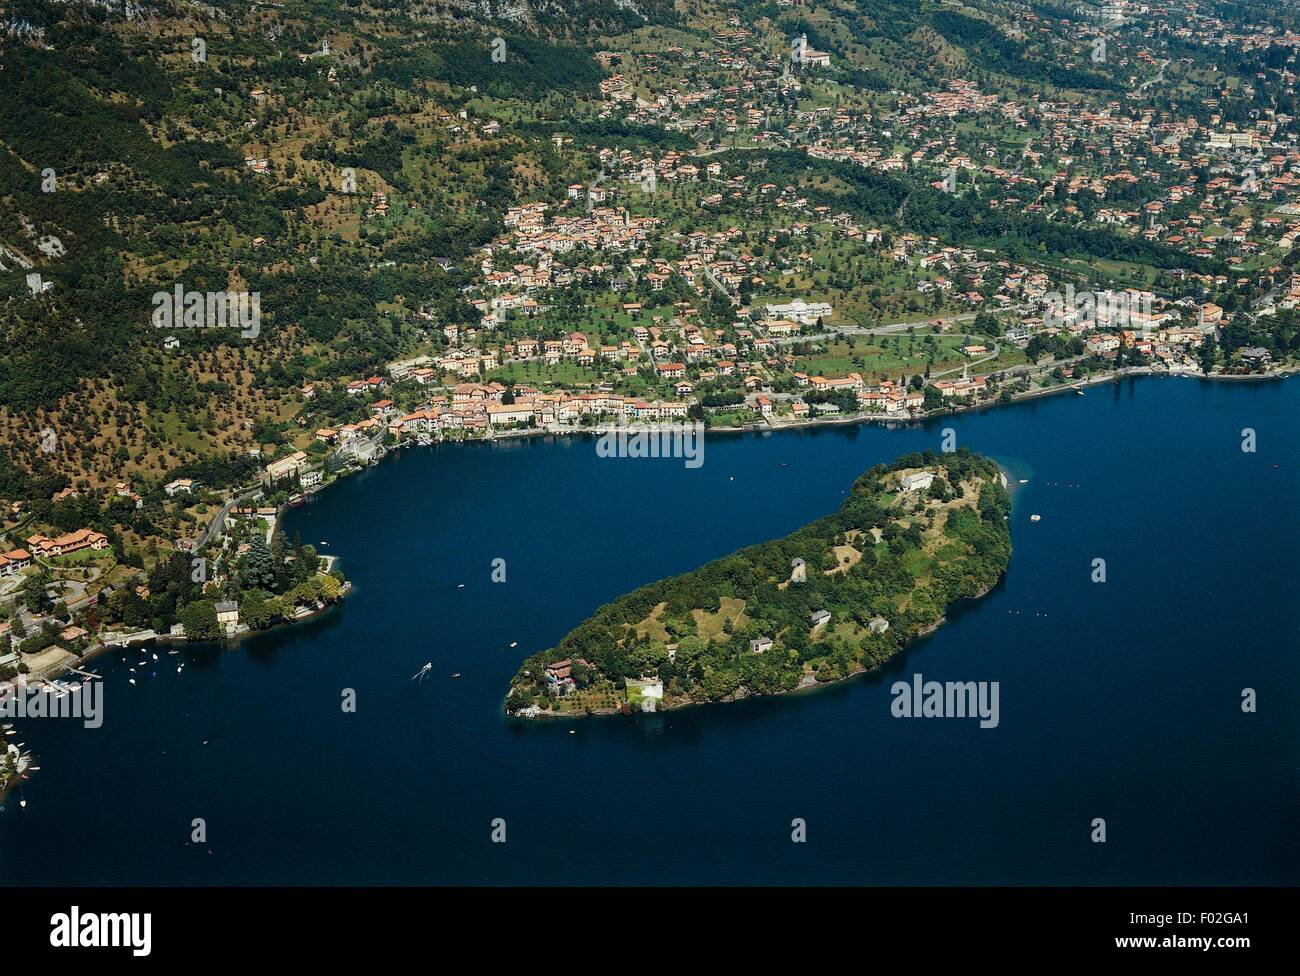 Vue aérienne du lac de Côme ou Lario avec île Comacina - Lombardie, Italie Banque D'Images